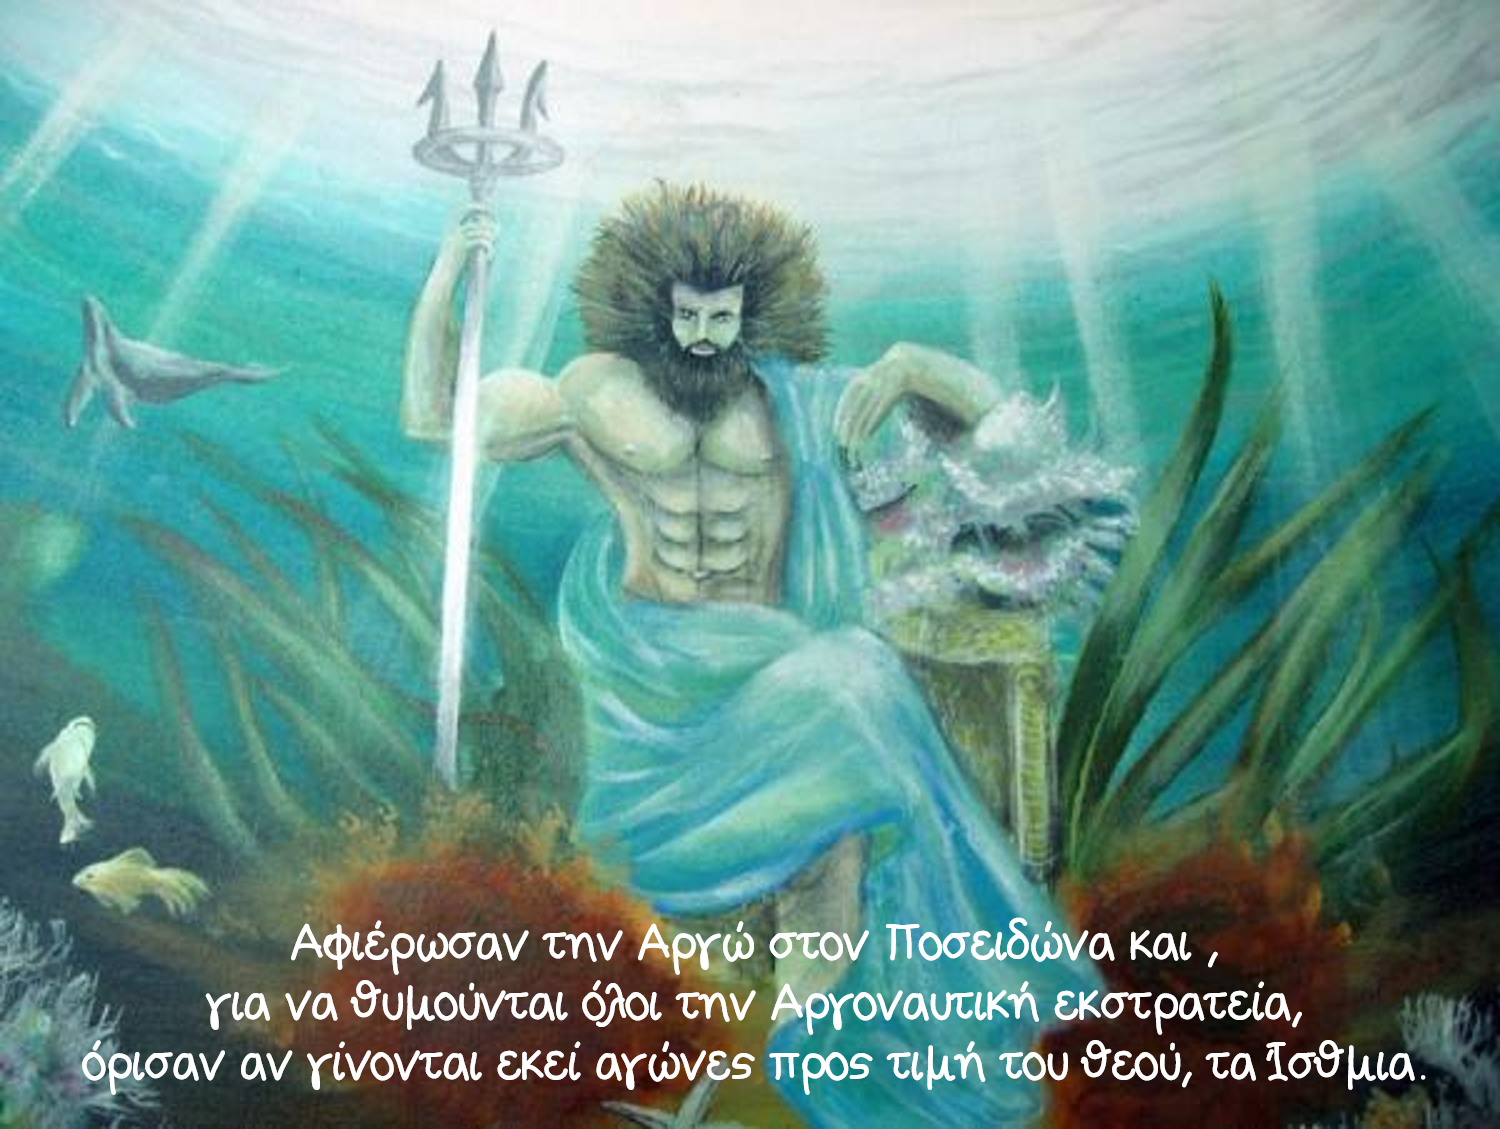 Царь посейдон. Нептун Бог морей. Нептун Посейдон мифология. Посейдон морской царь. Посейдон Бог морей.